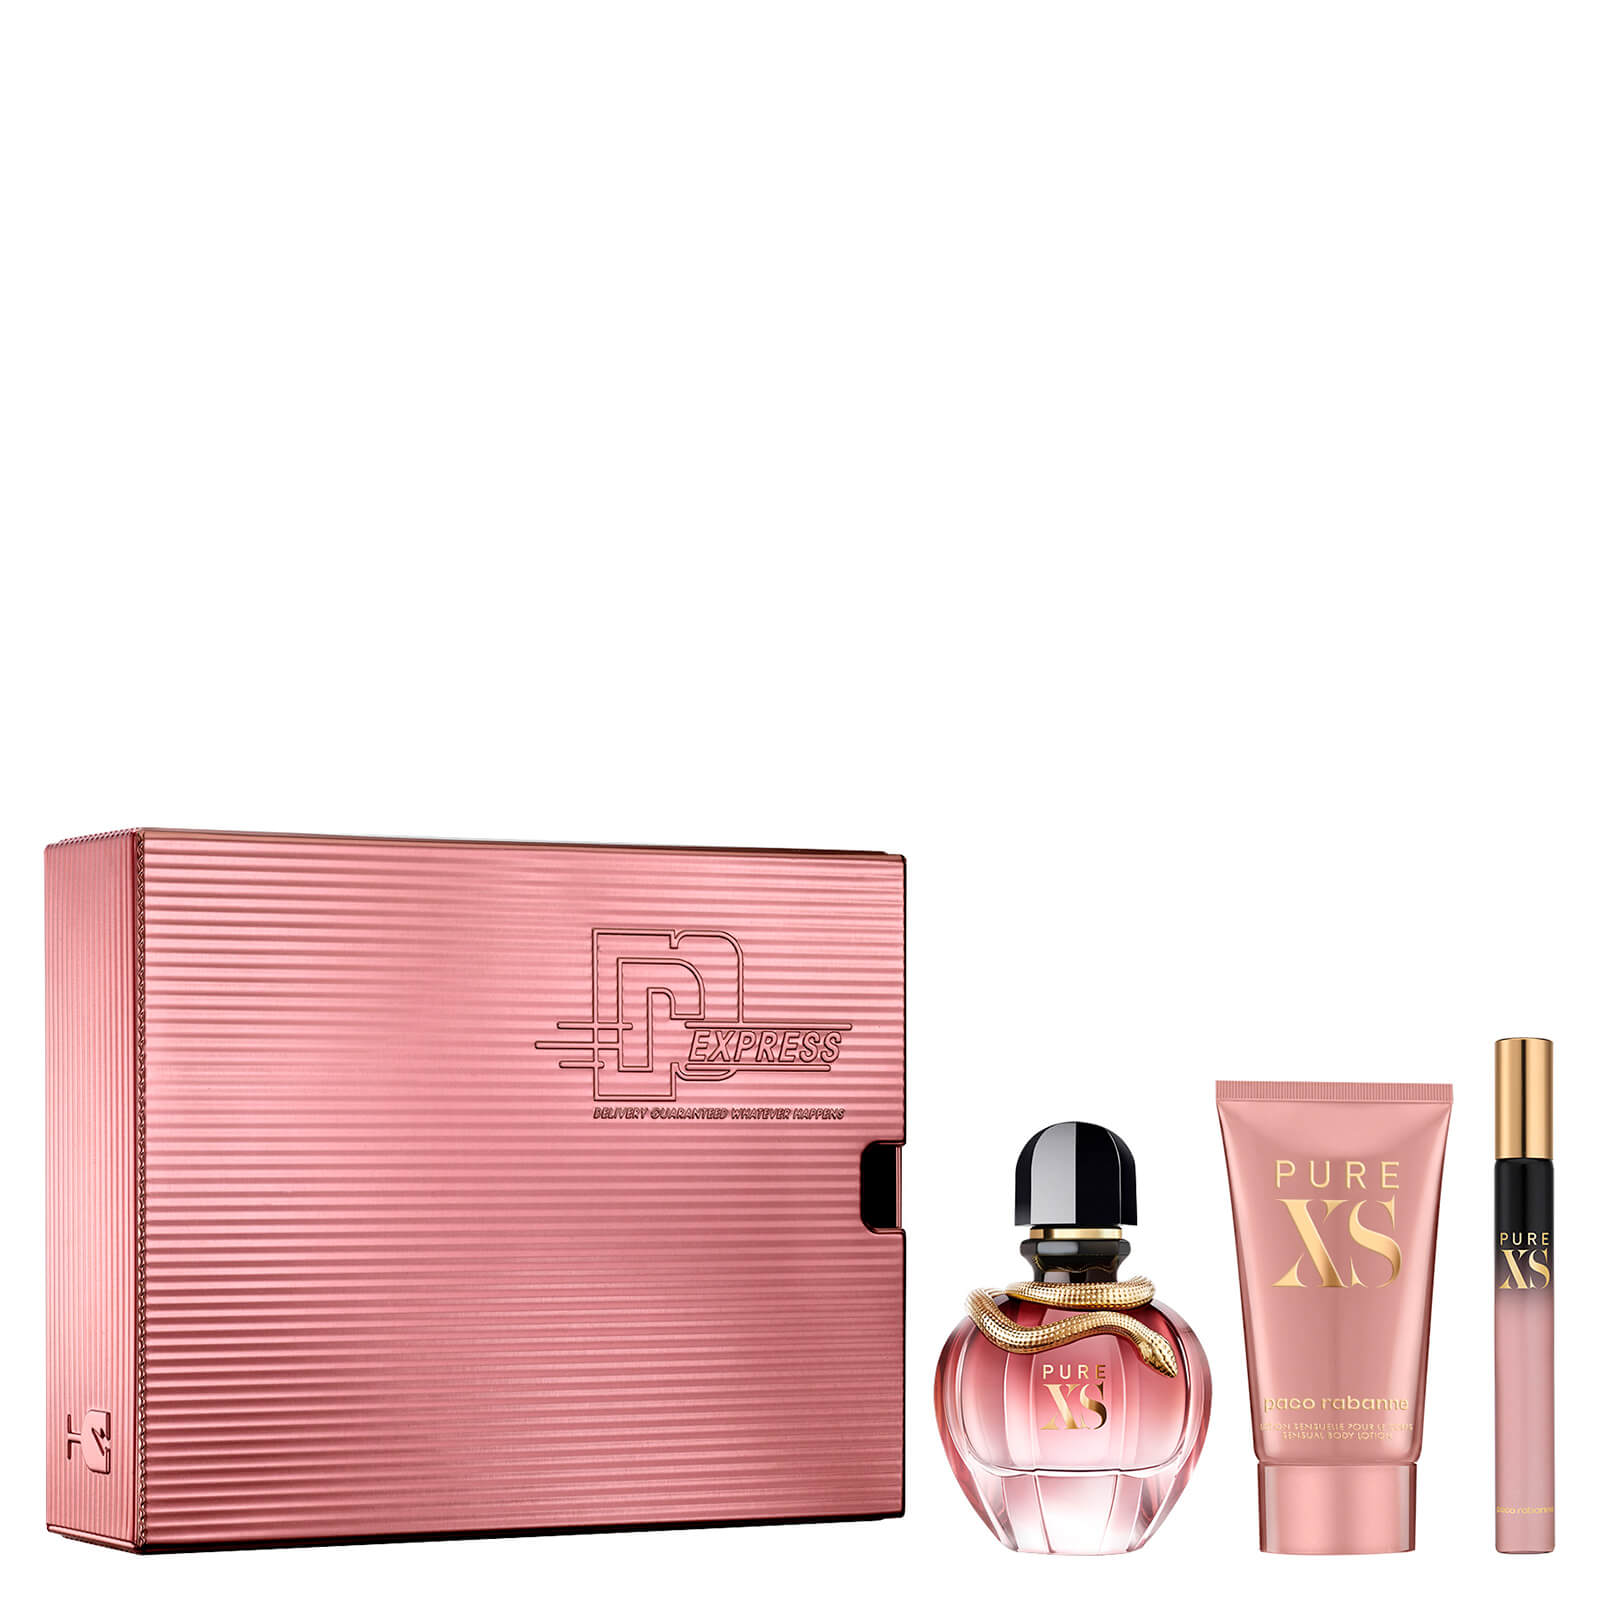 Paco Rabanne Pure Xs For Her Eau de Parfum Gift Set